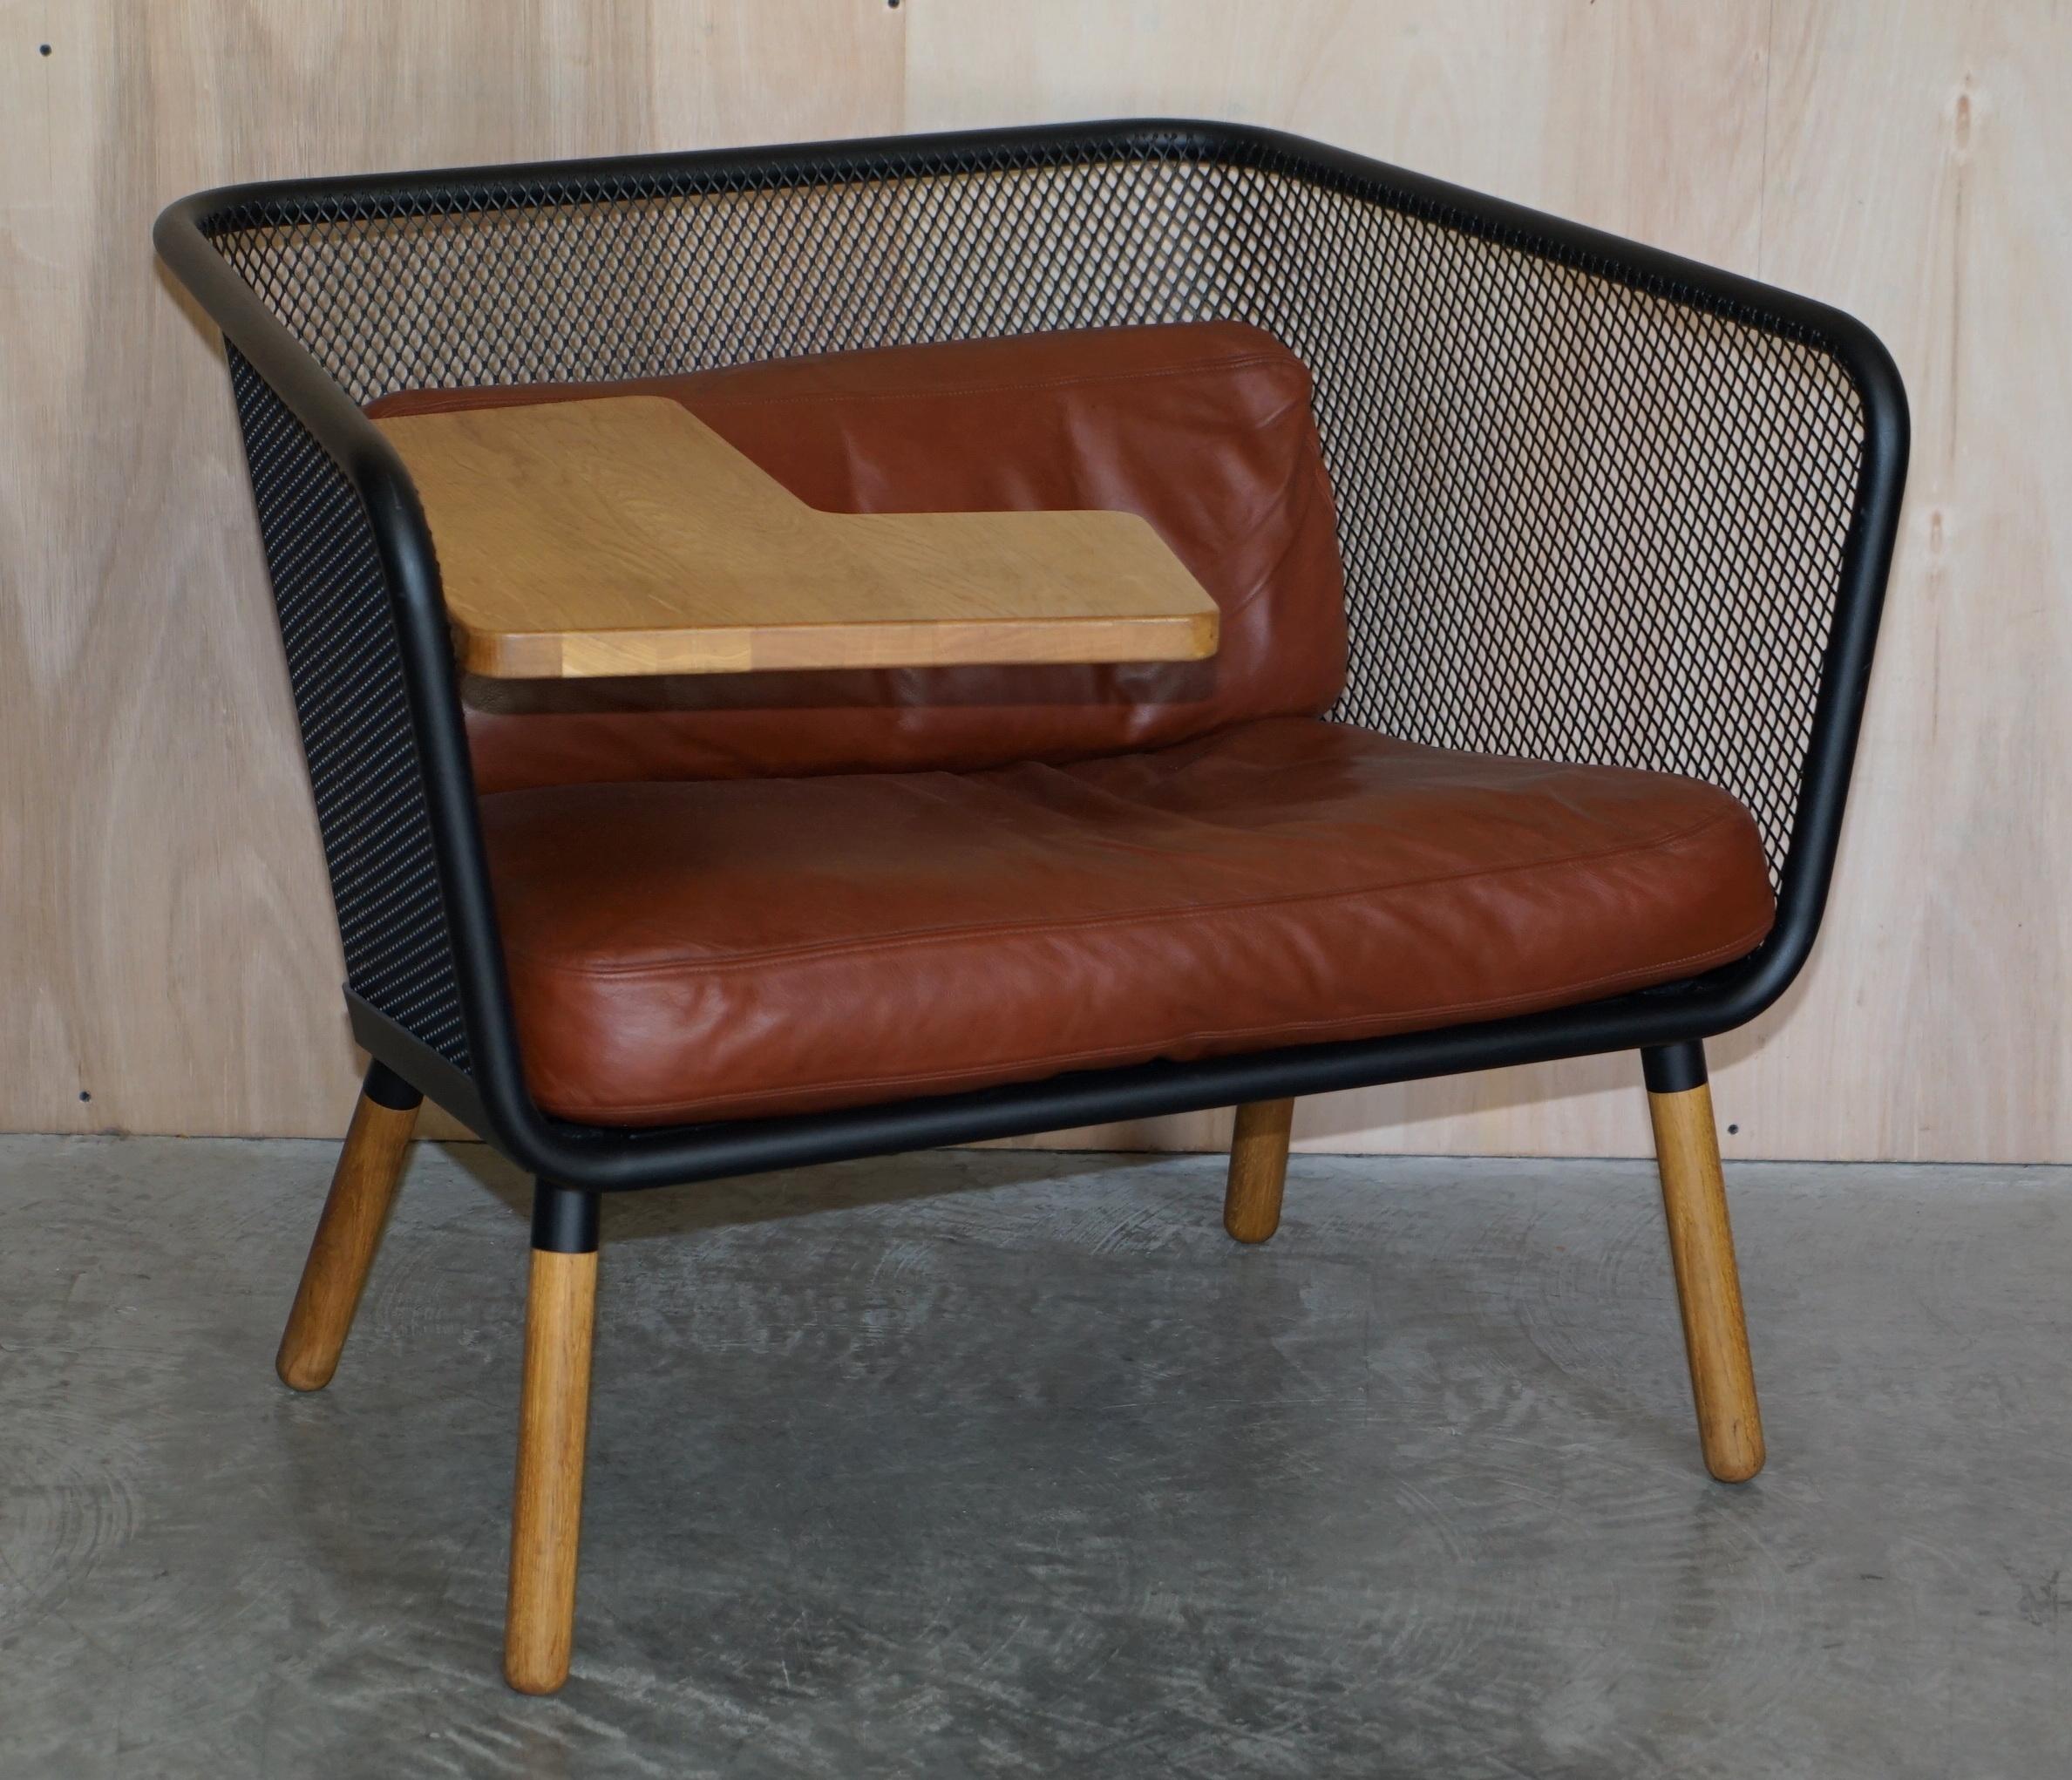 Nous sommes ravis de proposer à la vente cette paire exceptionnellement rare de fauteuils Honken conçus par Thomas Bernstrand et Lindau Borselius en 2015/2016 pour la gare RRP 8 800 €.

Les coussins d'assise et de dossier en cuir marron sont